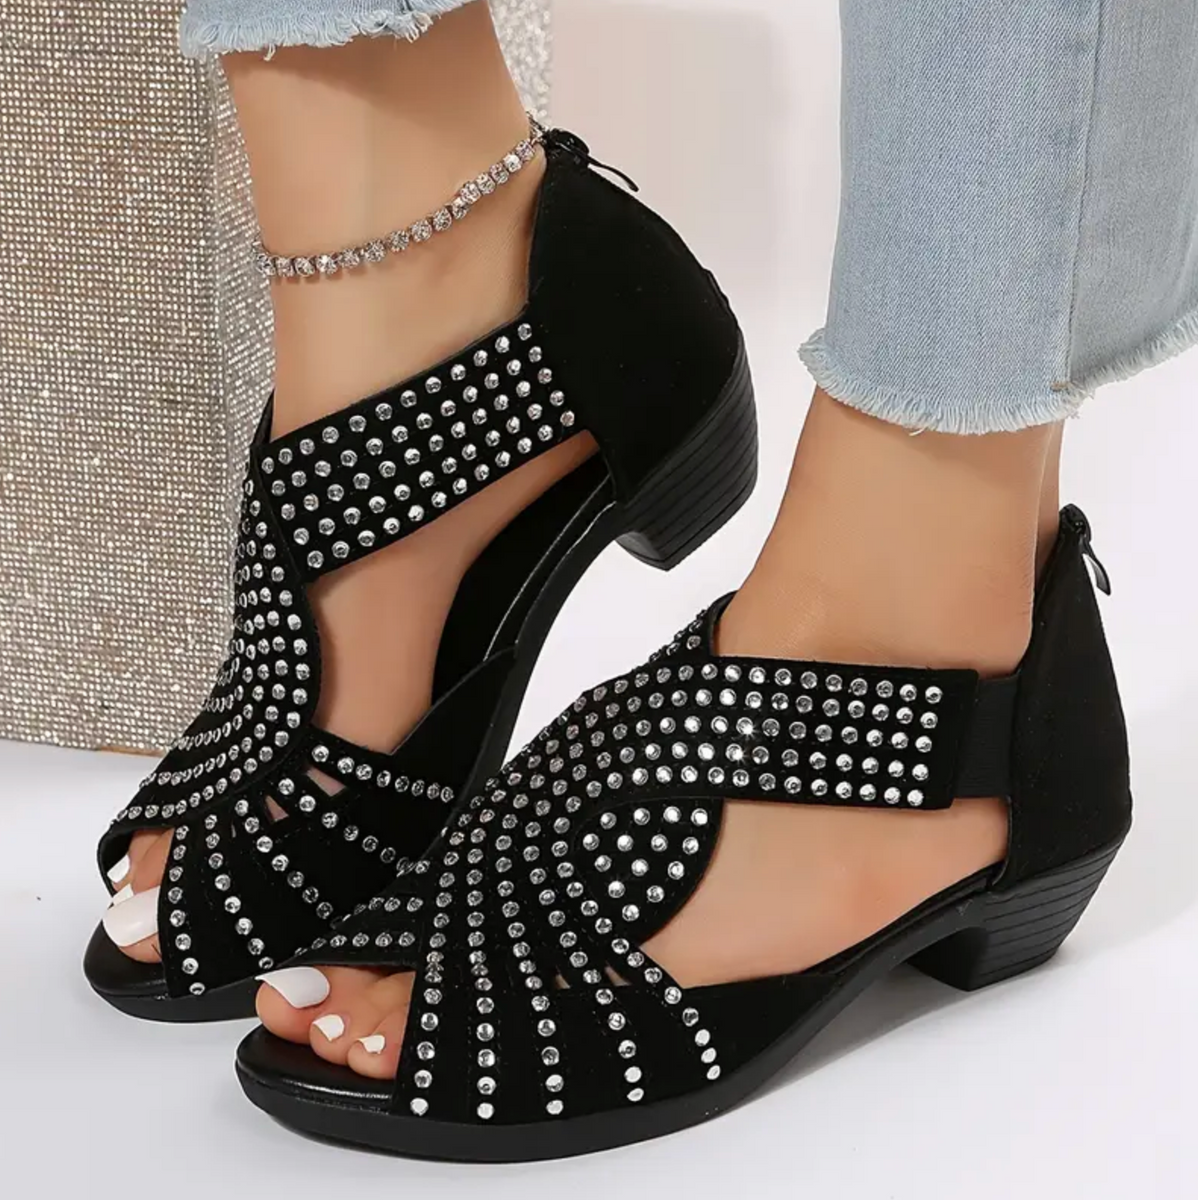 Comelyy women's low heel hollow rhinestone thick heel women's sandals